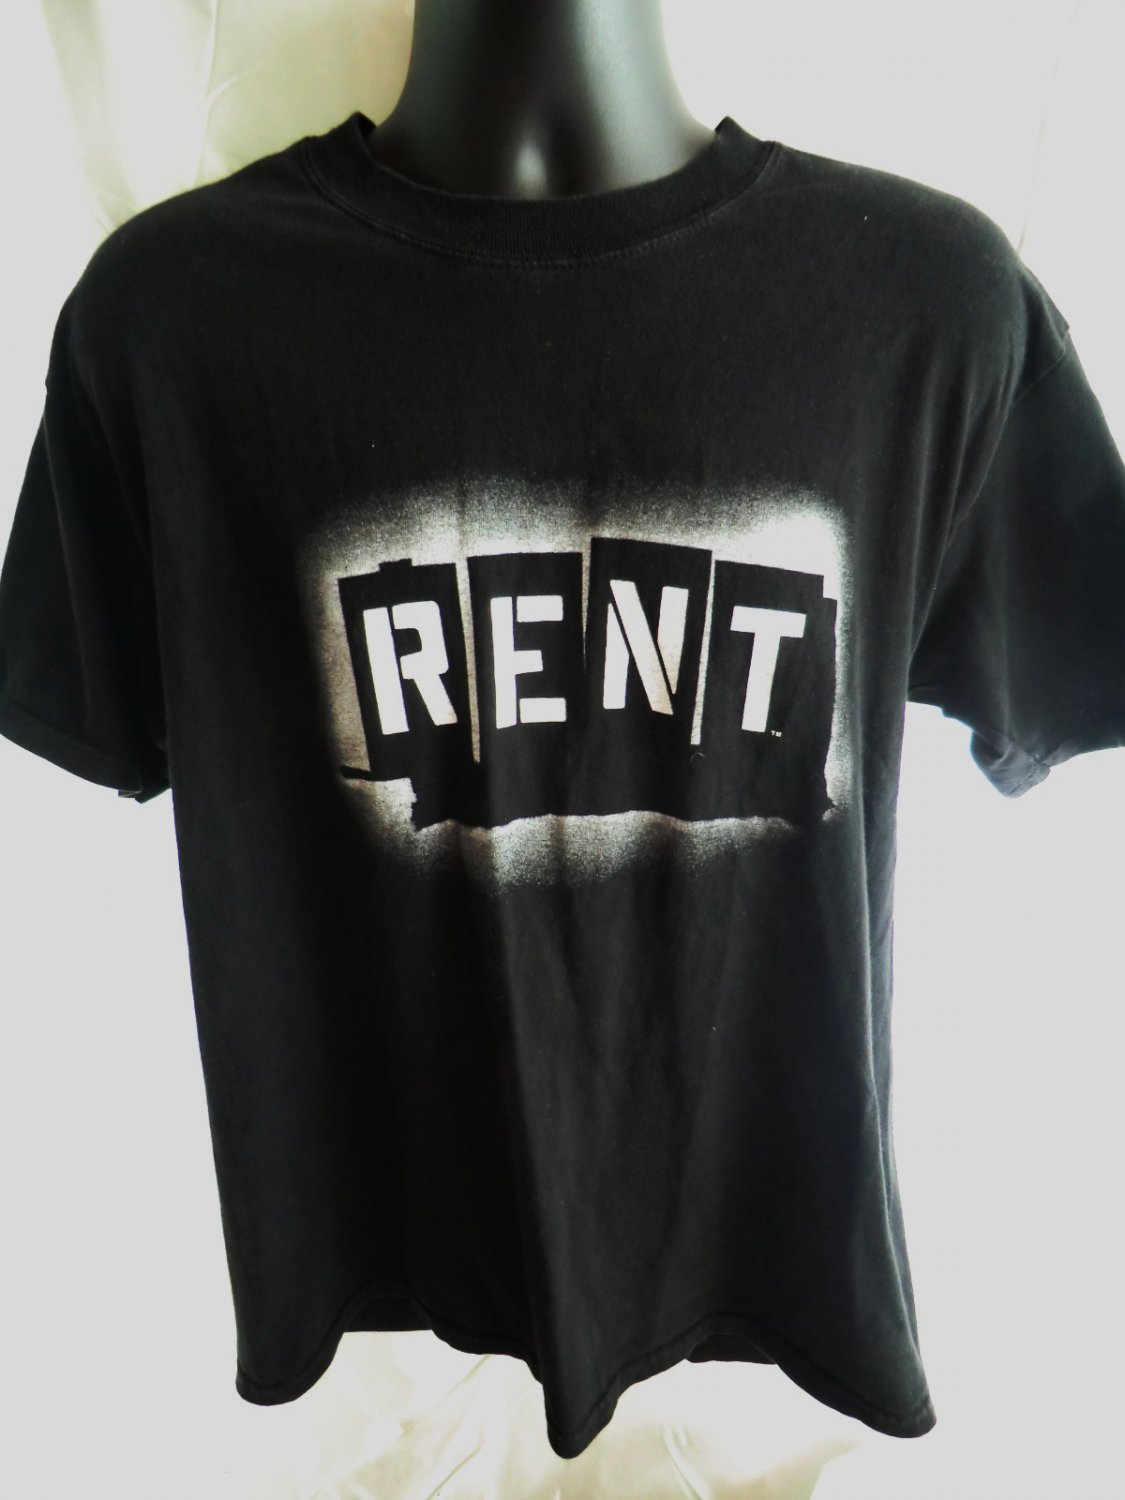 deadpool wearing rent t shirt